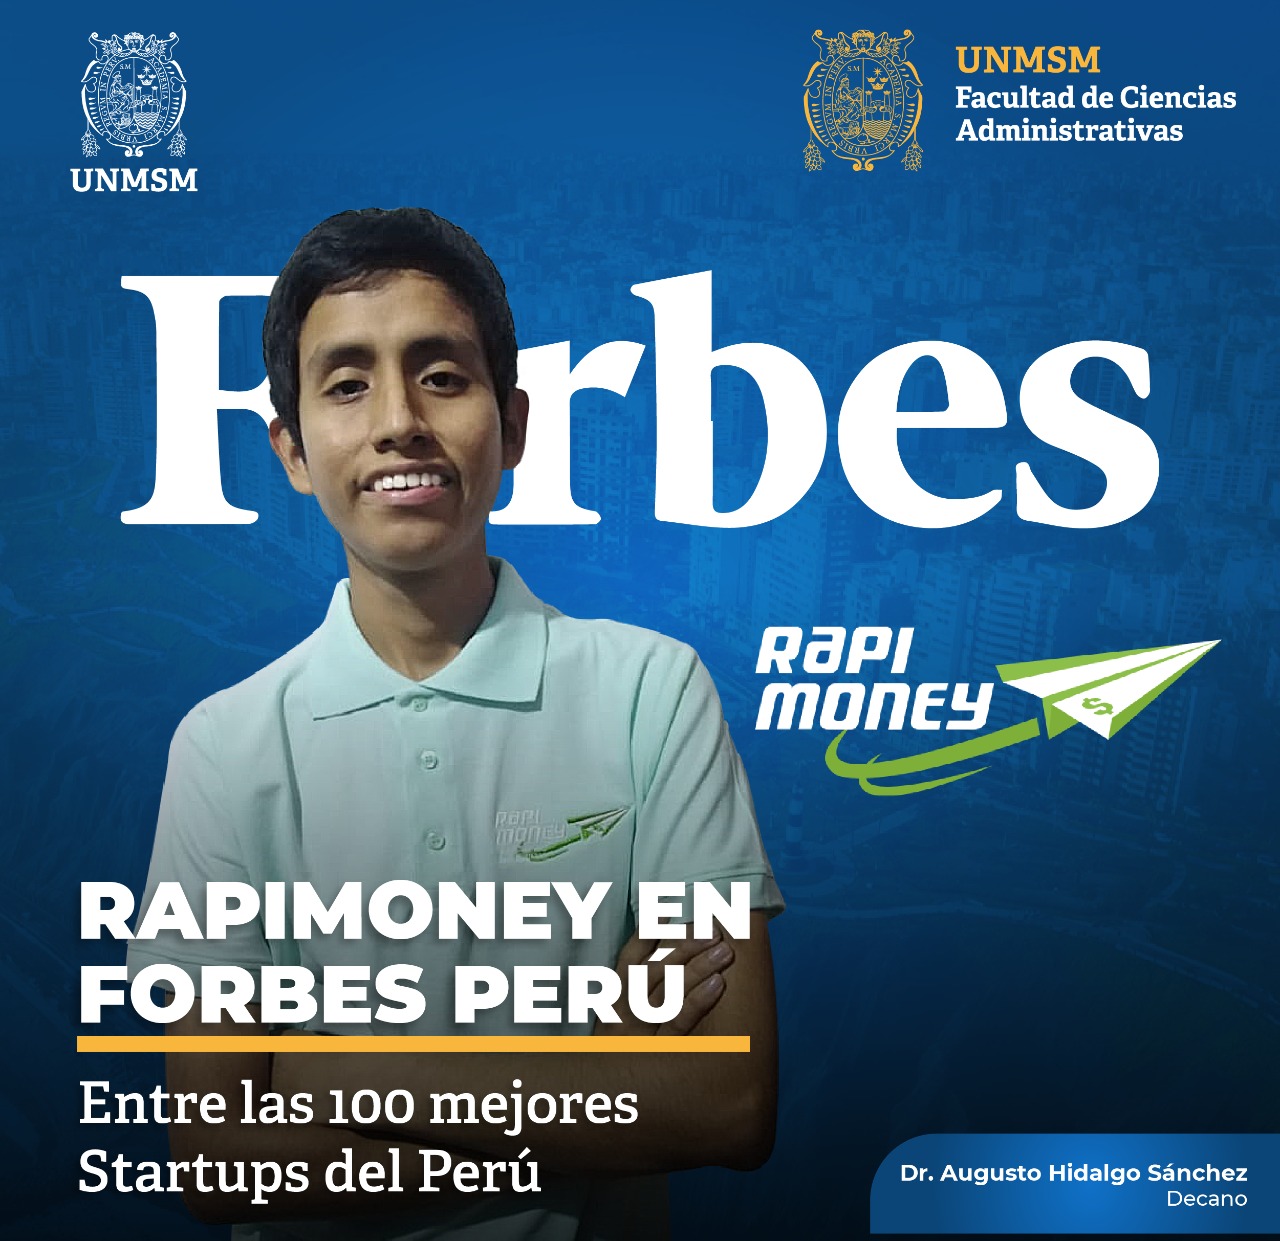 Proyecto de innovación Rapimoney considerado en la revista Forbes Perú entre las 100 mejores startups